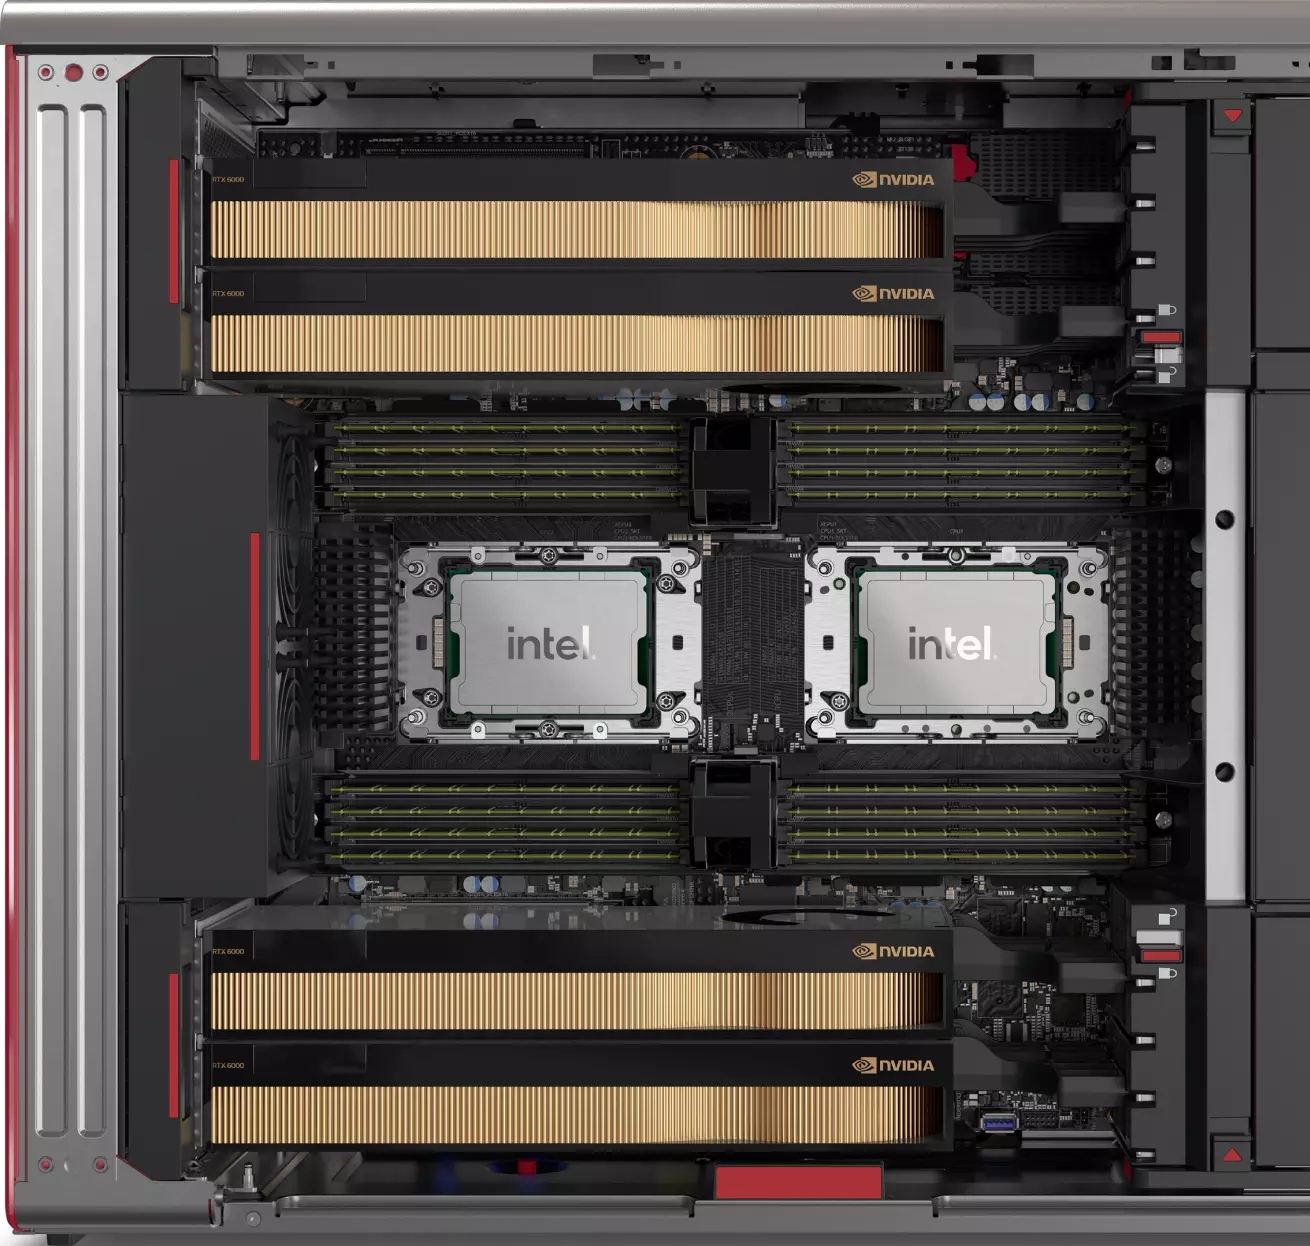 Detailweergave van de binnenkant van de Lenovo Workstation PX, met twee CPU's, geheugencompartimenten en ruimte voor vier grafische kaarten